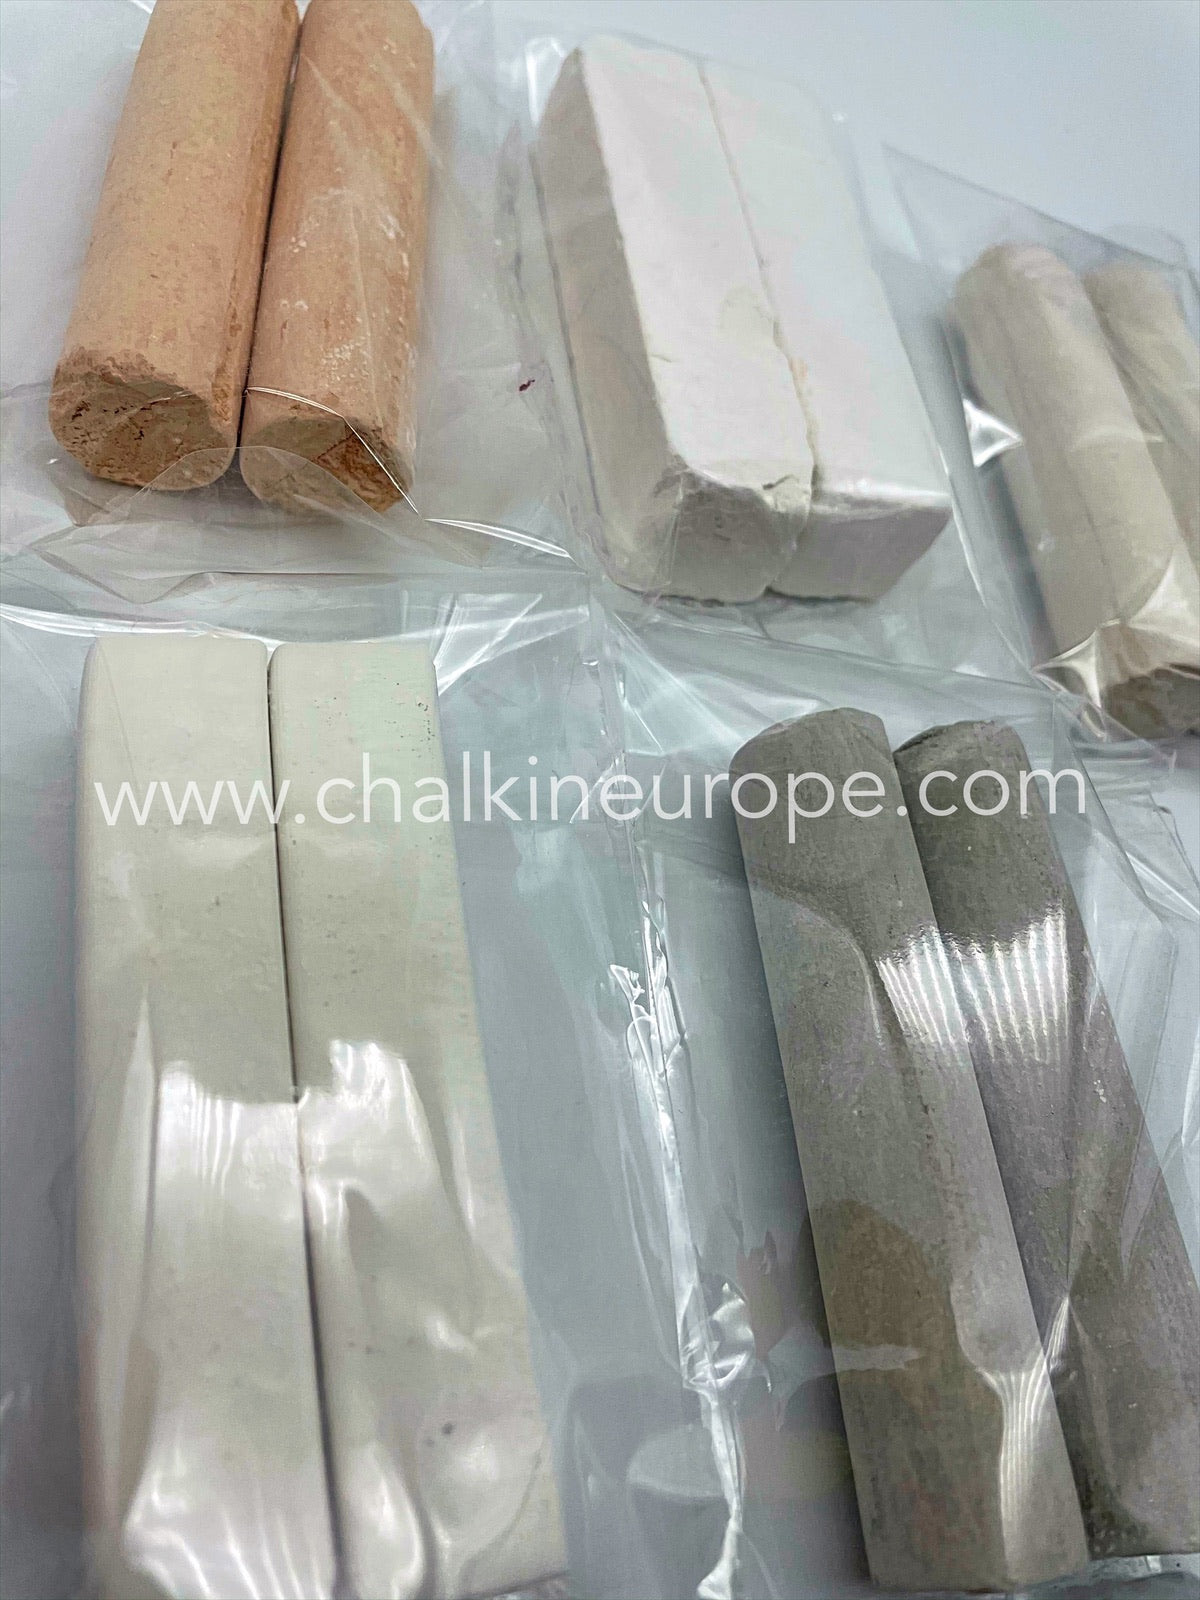 Campioni di argilla commestibile - Chalkineurope